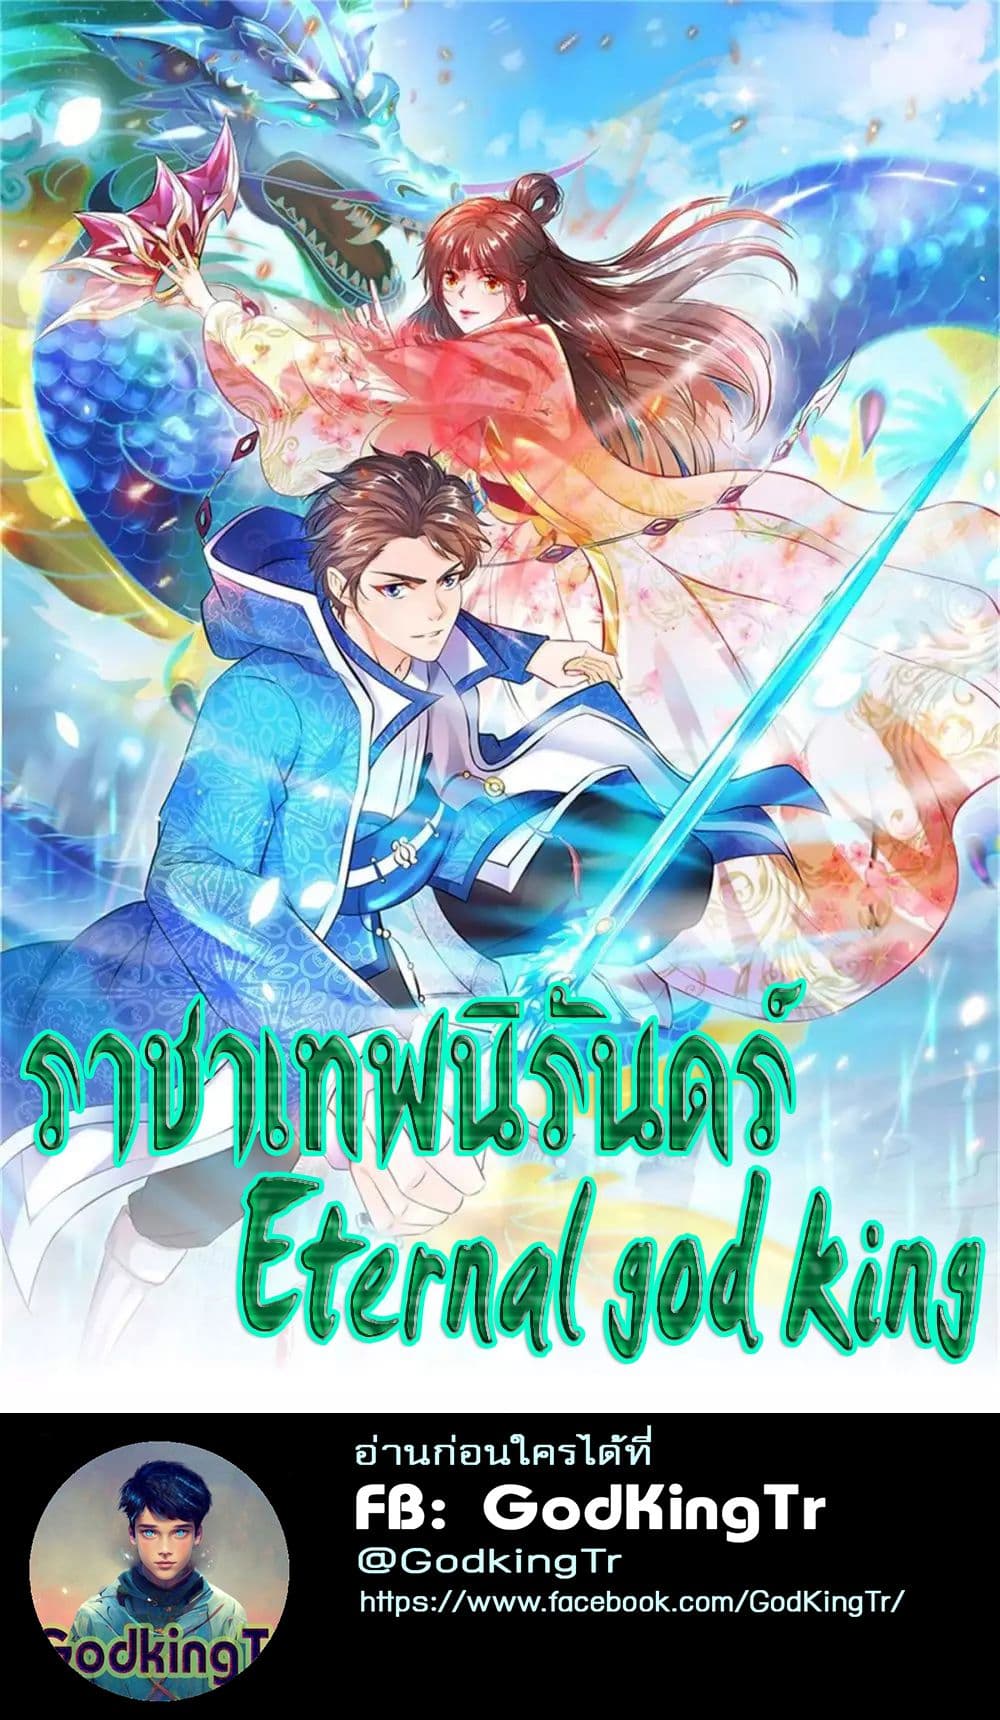 Eternal god King 35 (1)